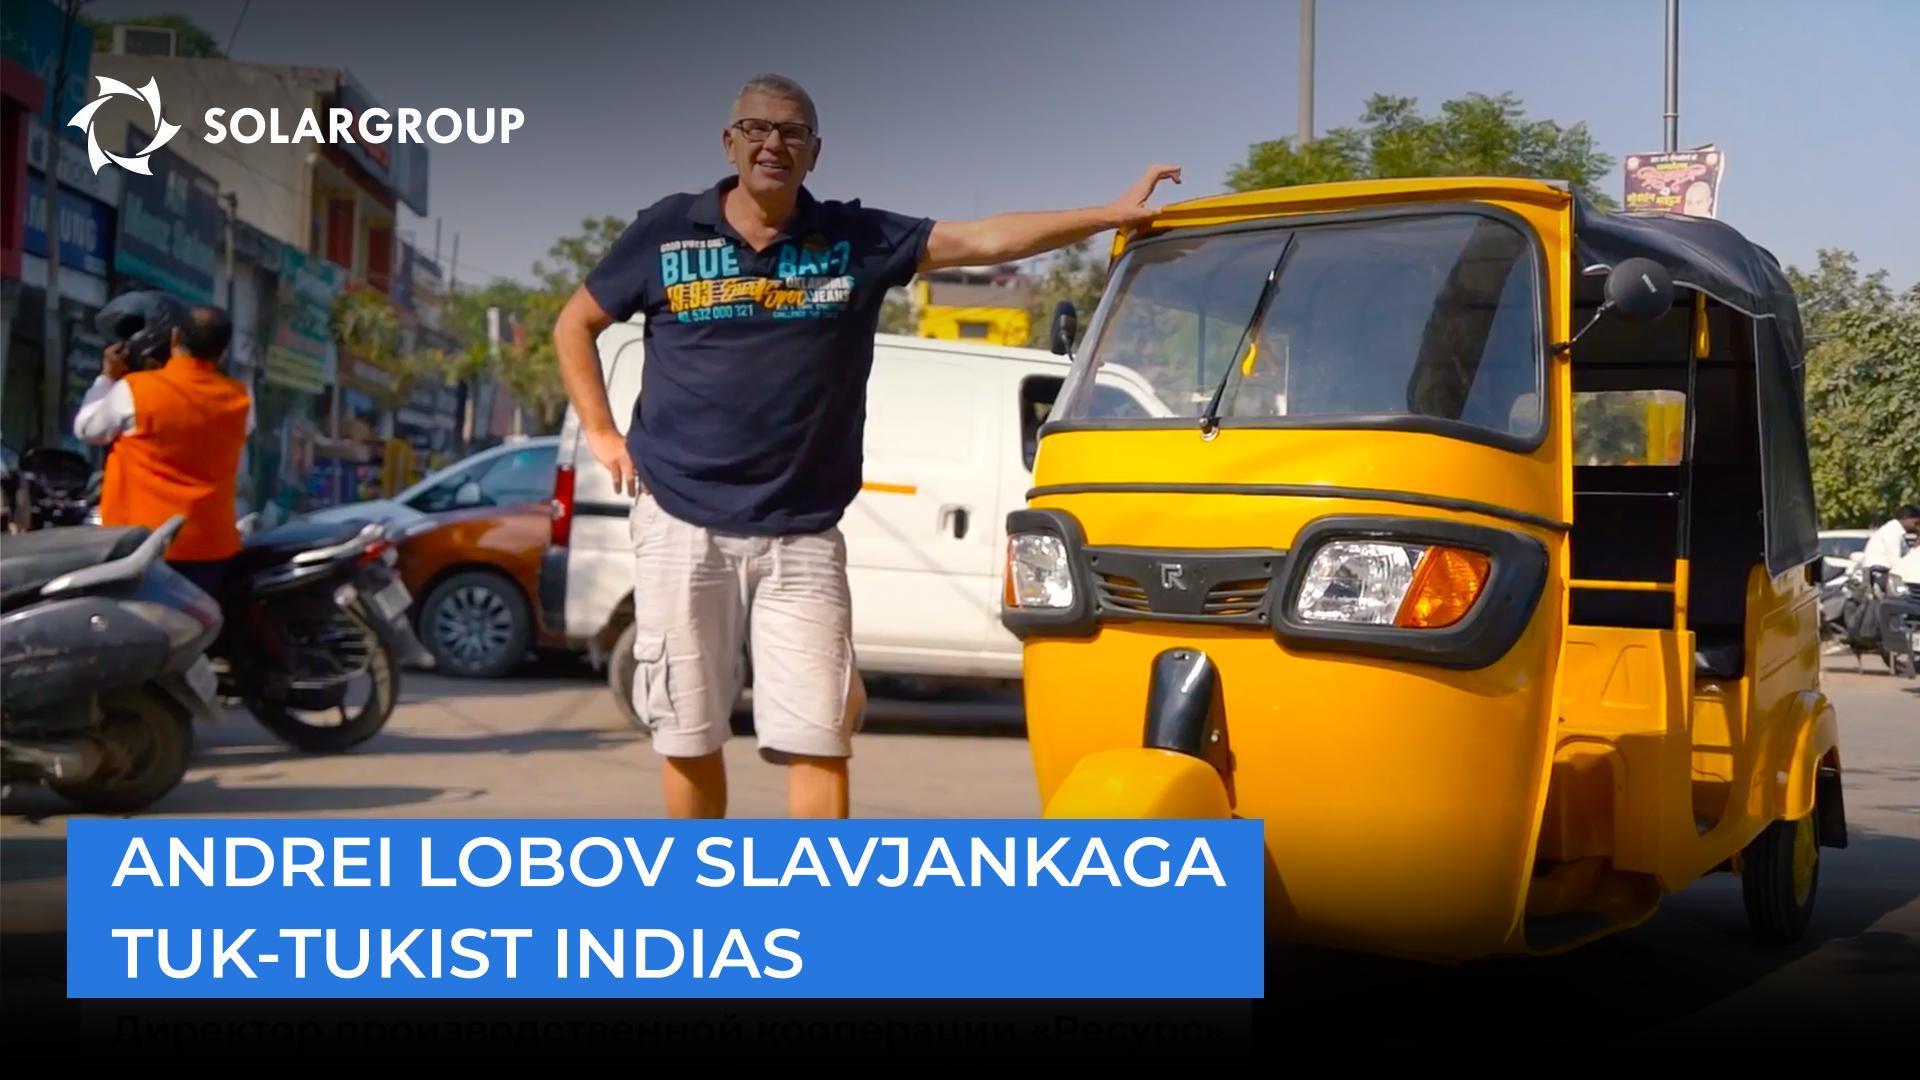 Slavjankaga elektrimootoritele on siin nõudlust", Andrei Lobov India tuk-tukist.